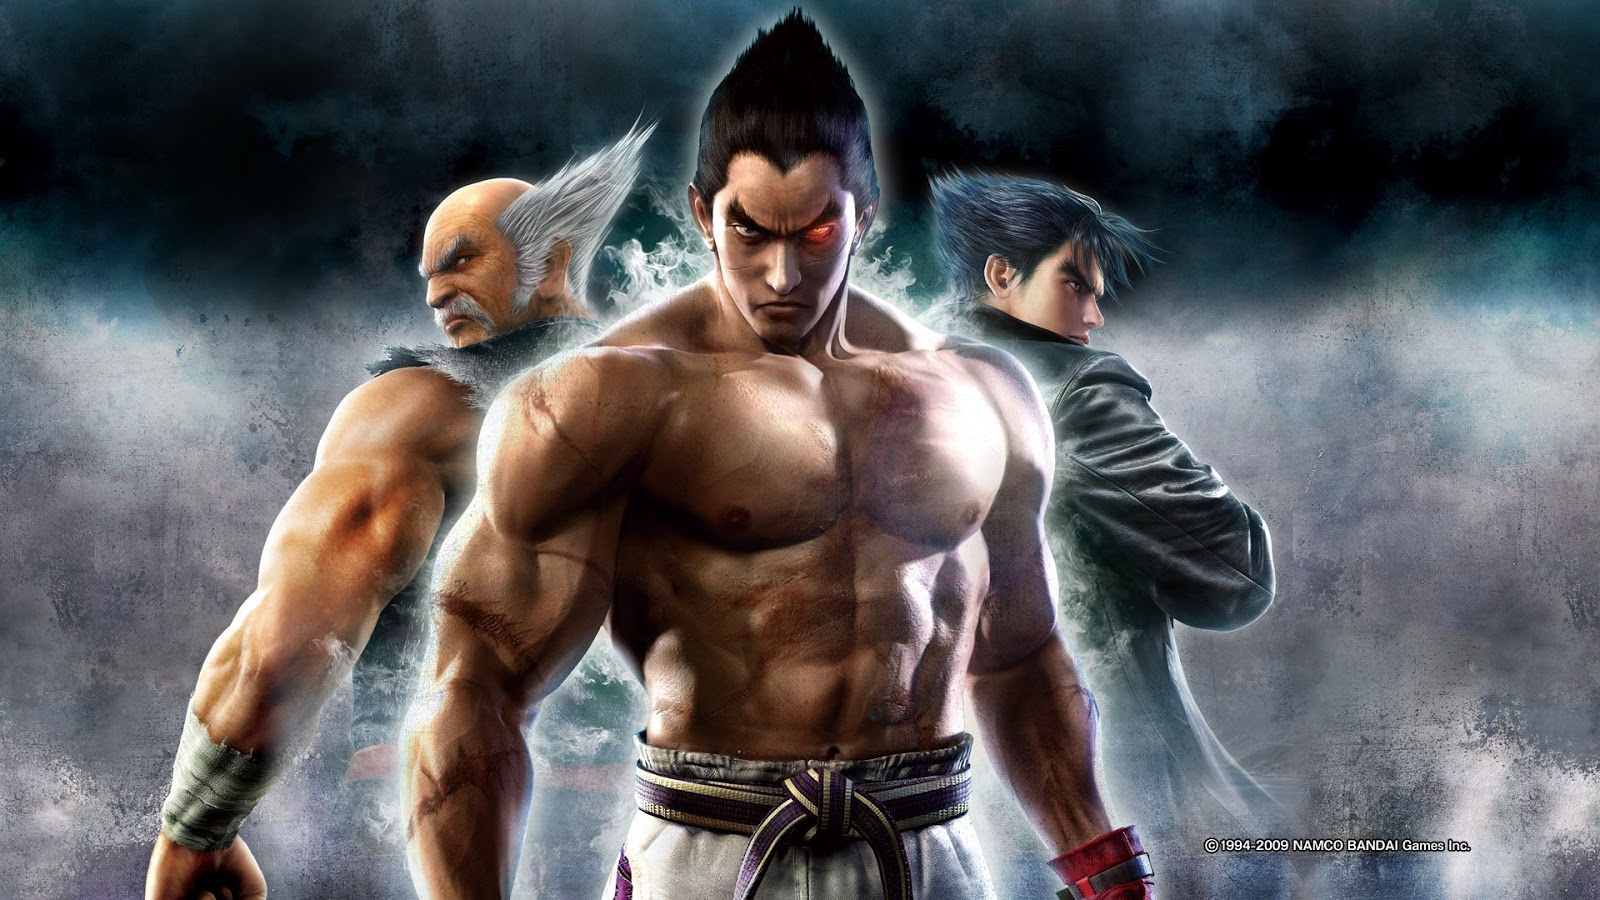 Tekken 7 release date